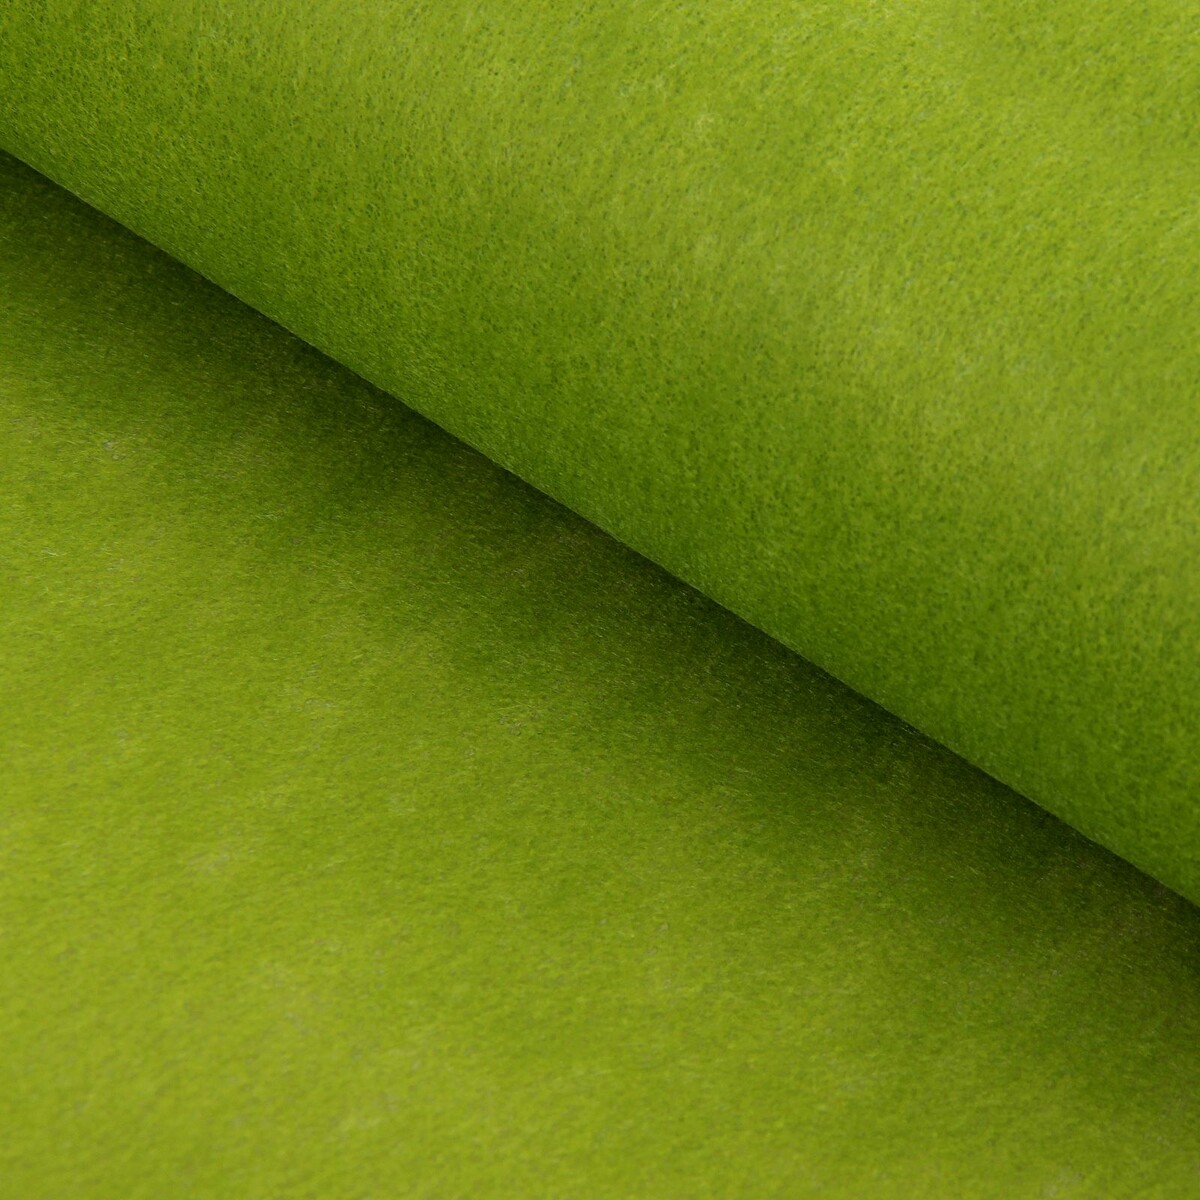 Фетр для упаковок и поделок, однотонный, оливковый, двусторонний, зеленый, рулон 1шт., 50 см x 15 м мяч для художественной гимнастики lugger однотонный d 15 см зеленый с блестками